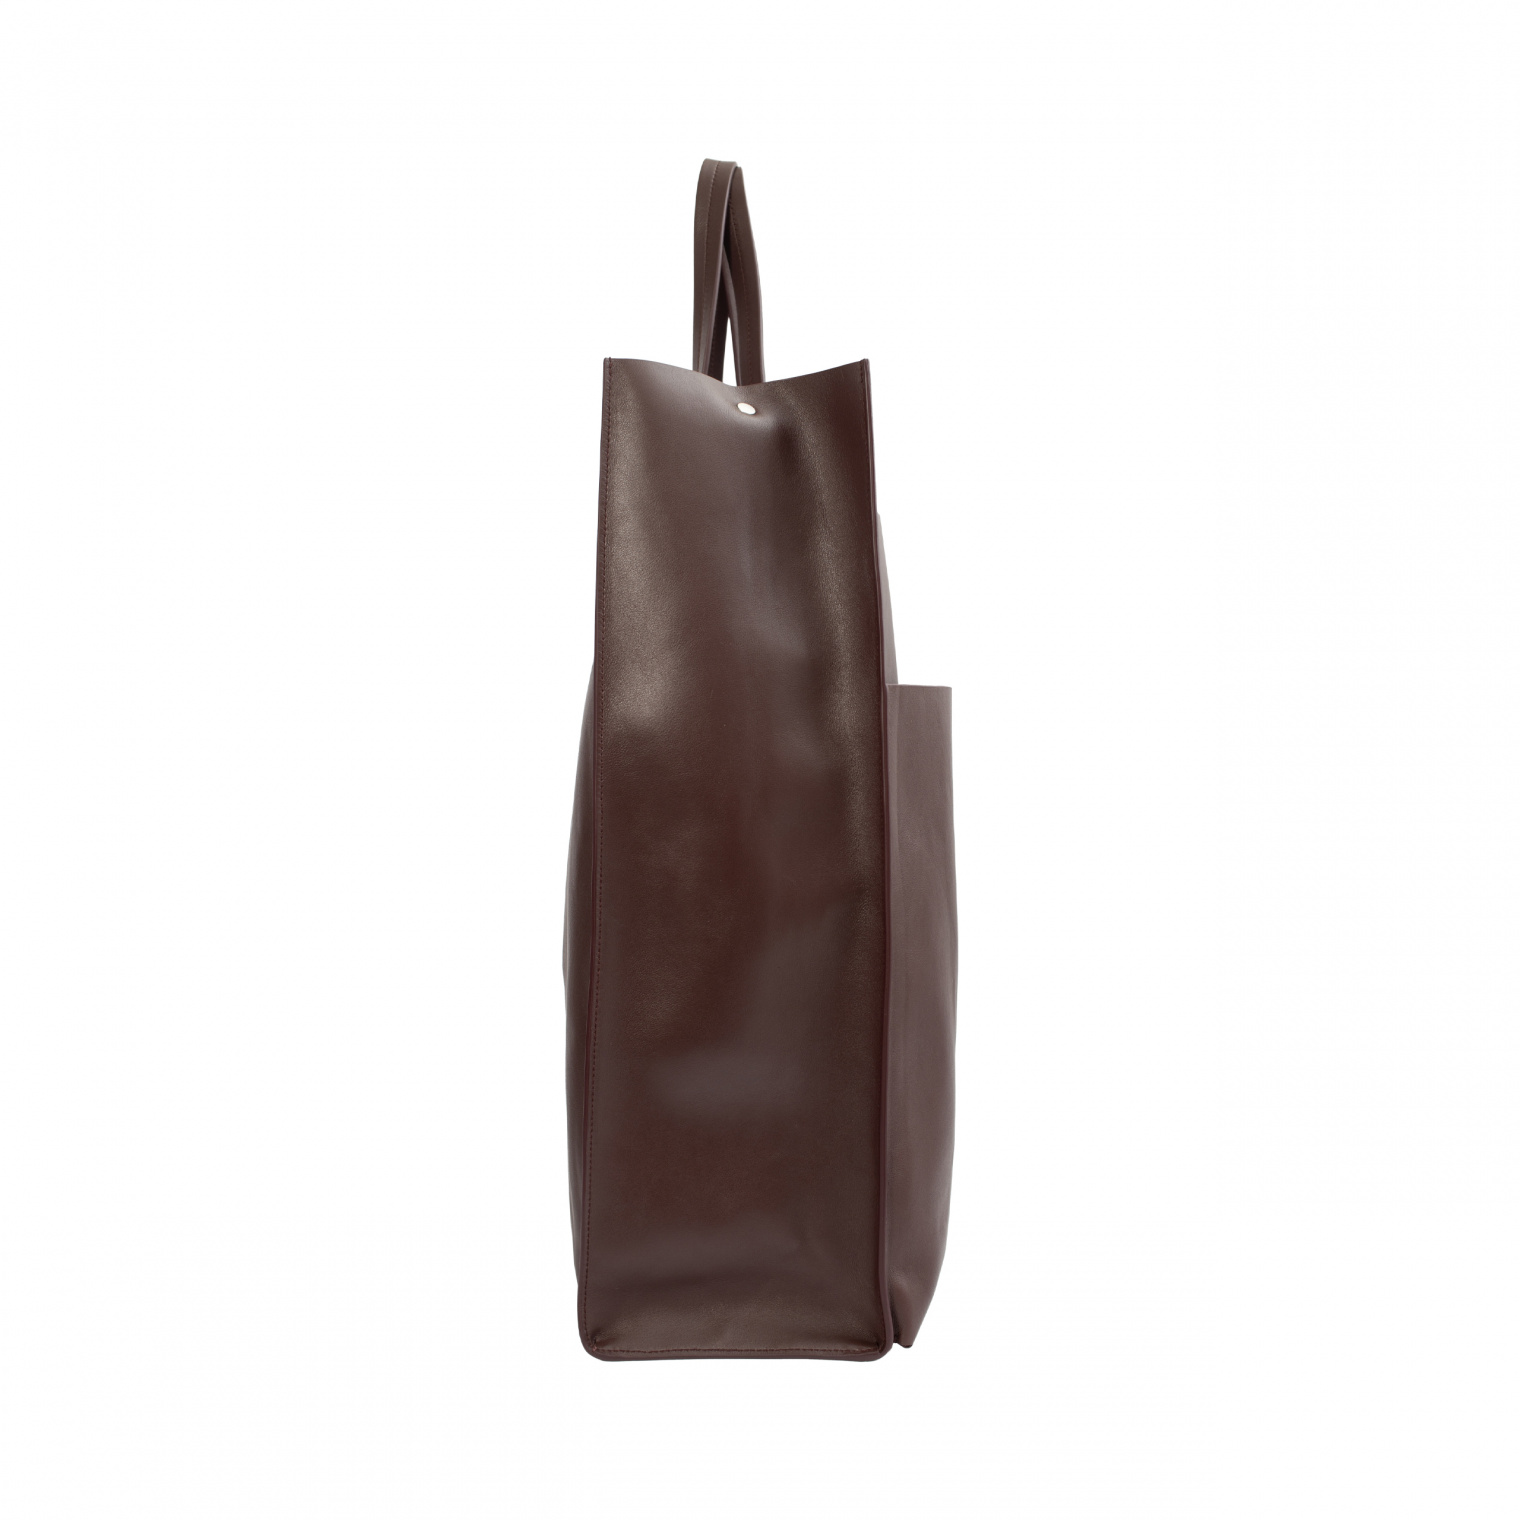 Jil Sander Leather tote bag wit pockets